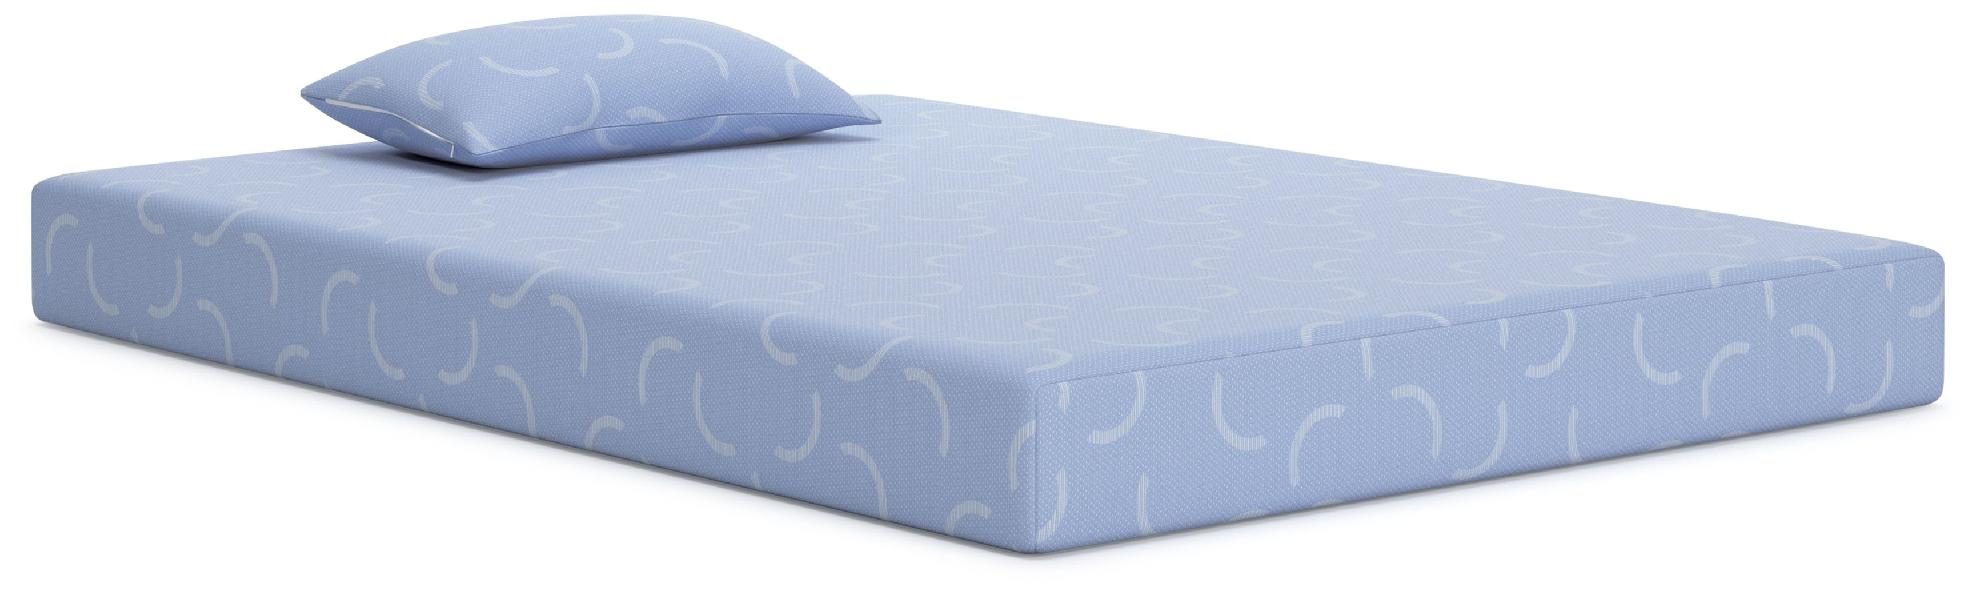 Image of Ikidz Ocean - Blue - Twin Mattress And Pillow Set of 2